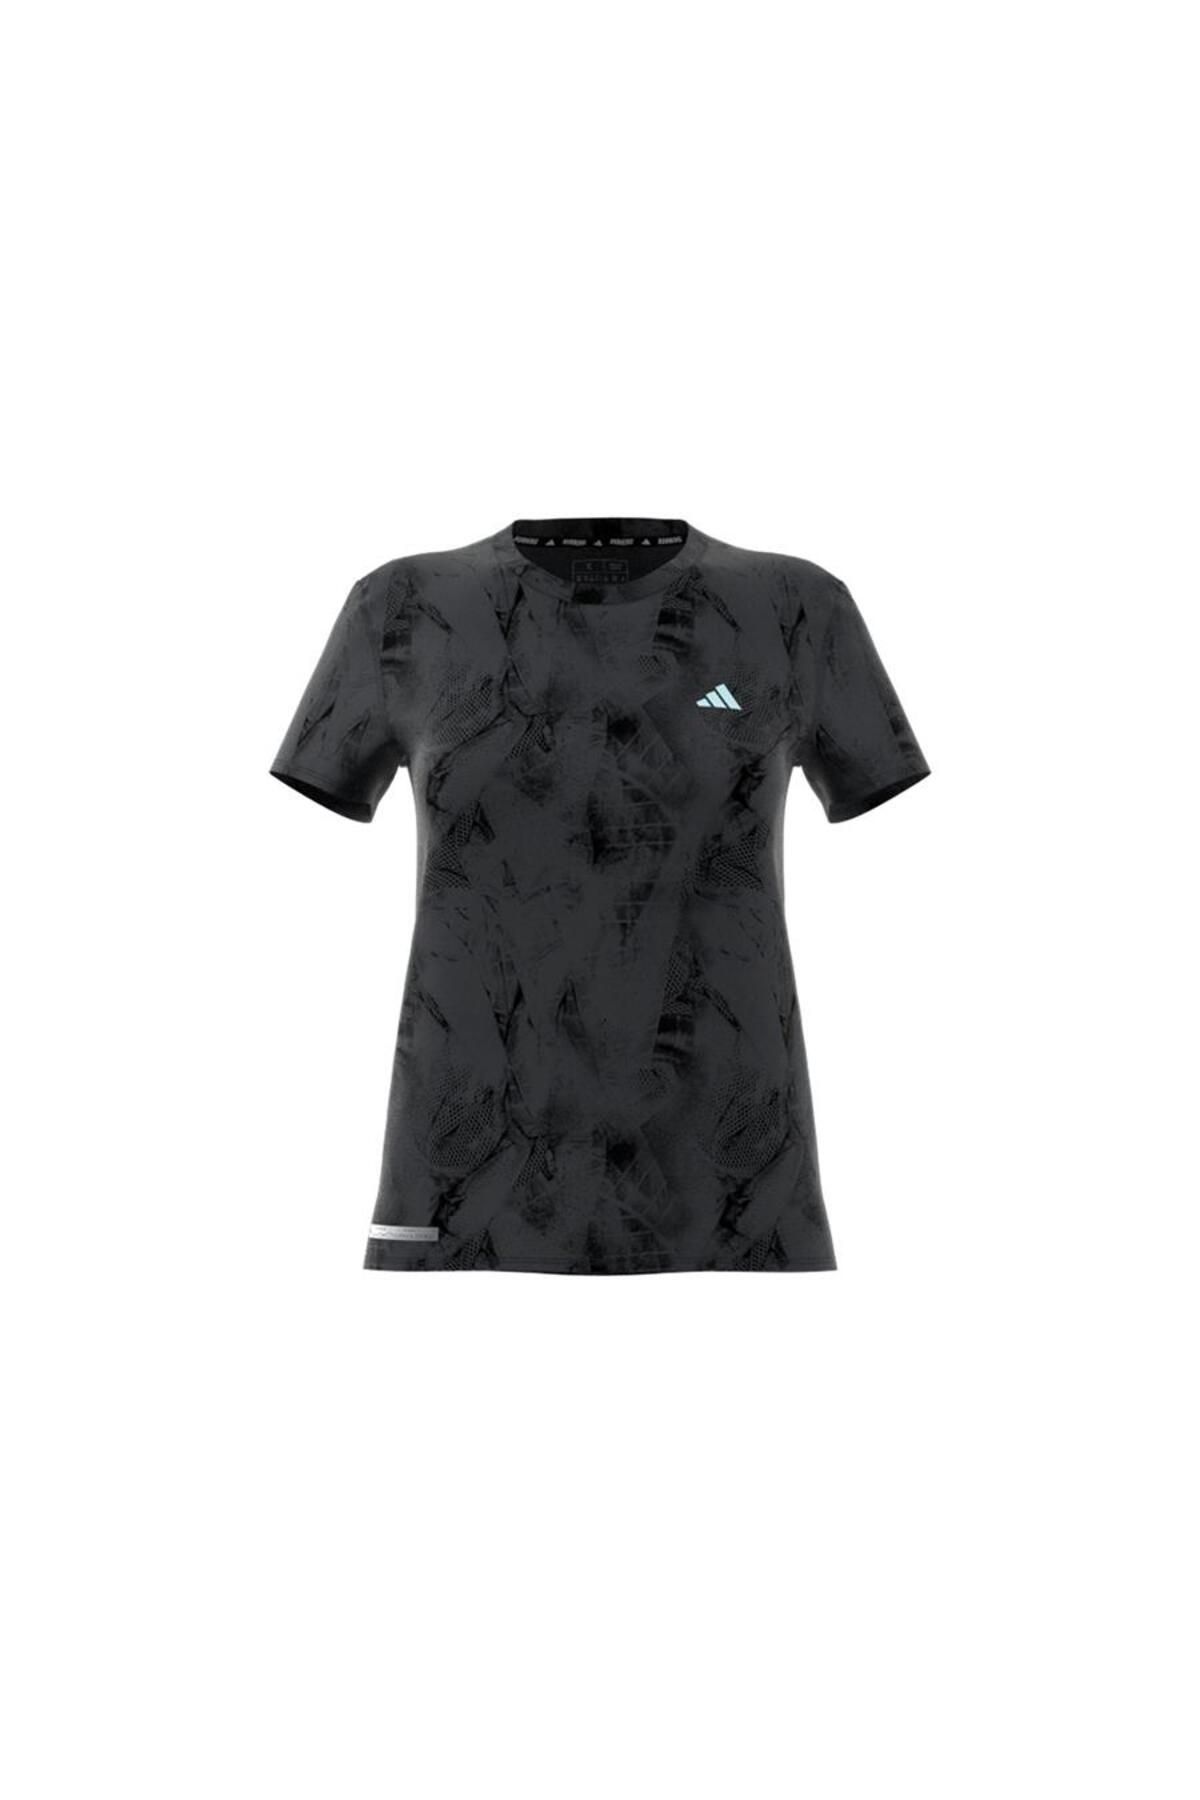 adidas Ultimate Allover Print Kadın Tişört In0630